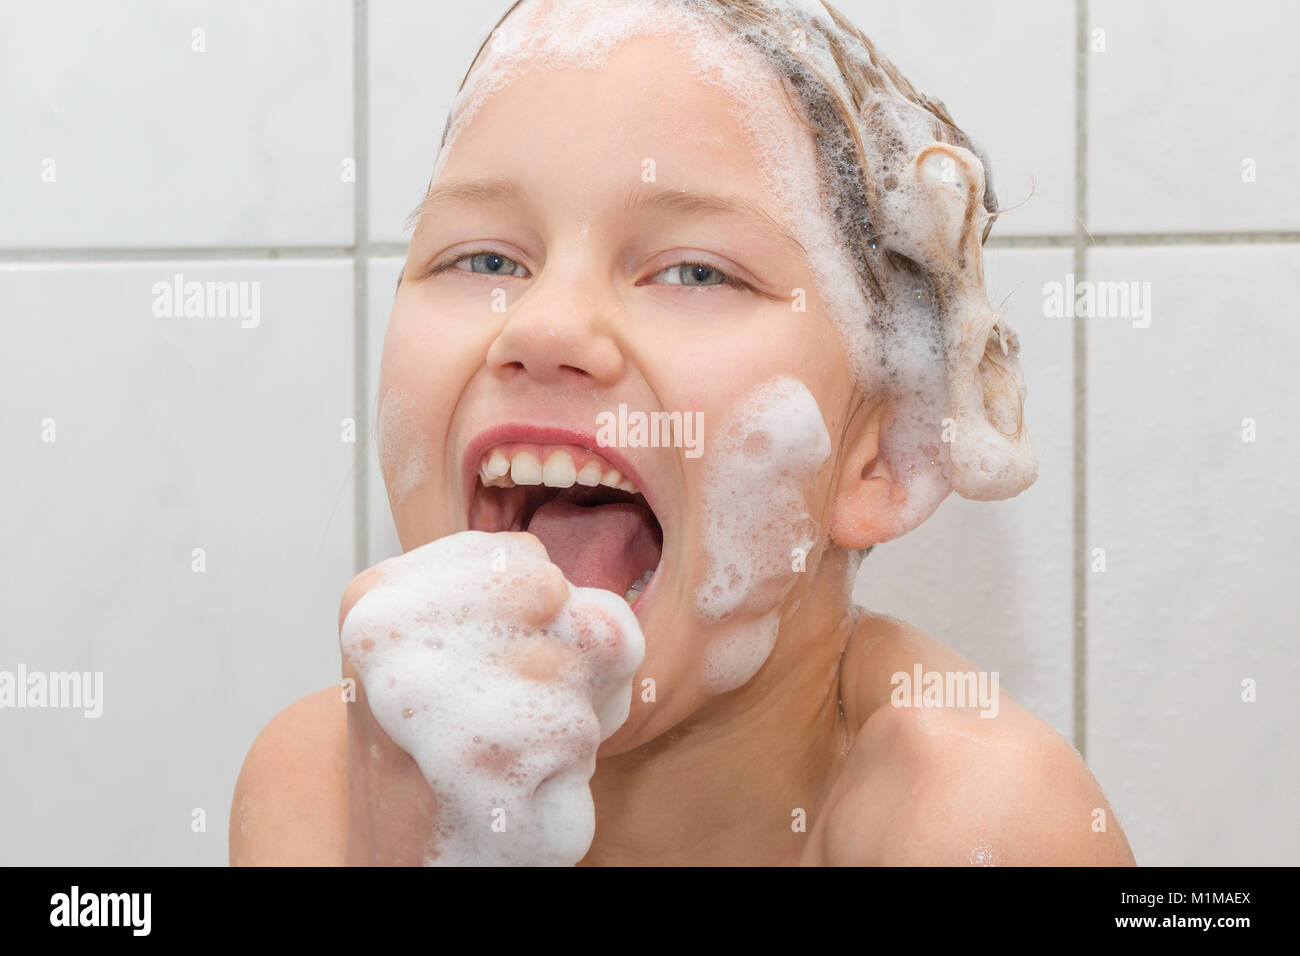 Una niña de 9 años está en la ducha y el canto. Ella constituye un micrófono con su mano Foto de stock